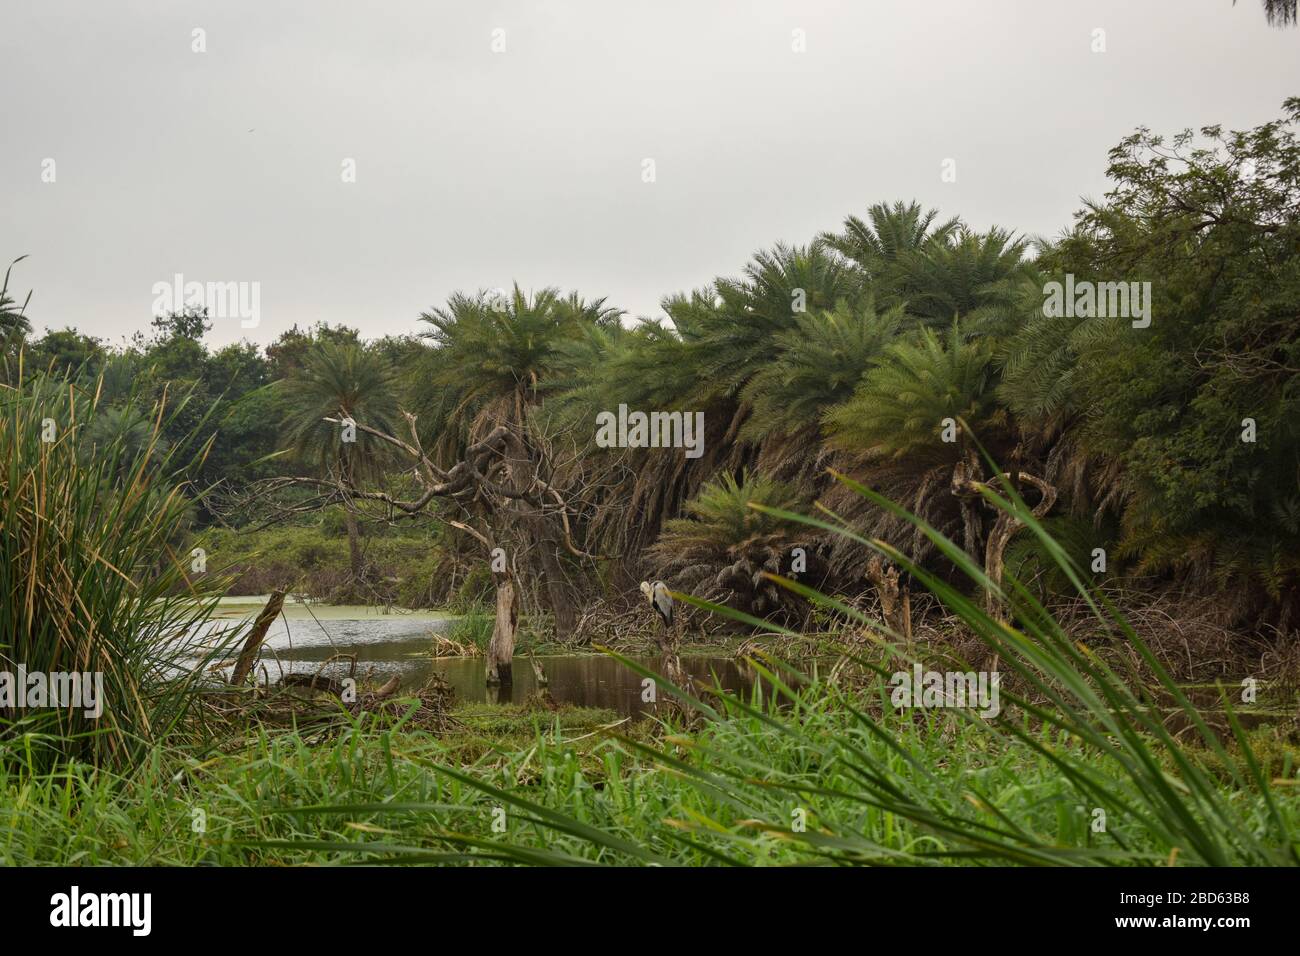 Forêt de pluie naturelle profonde/jungle en Inde grandes arbres et branches d'arbres verdure photo du stock Banque D'Images